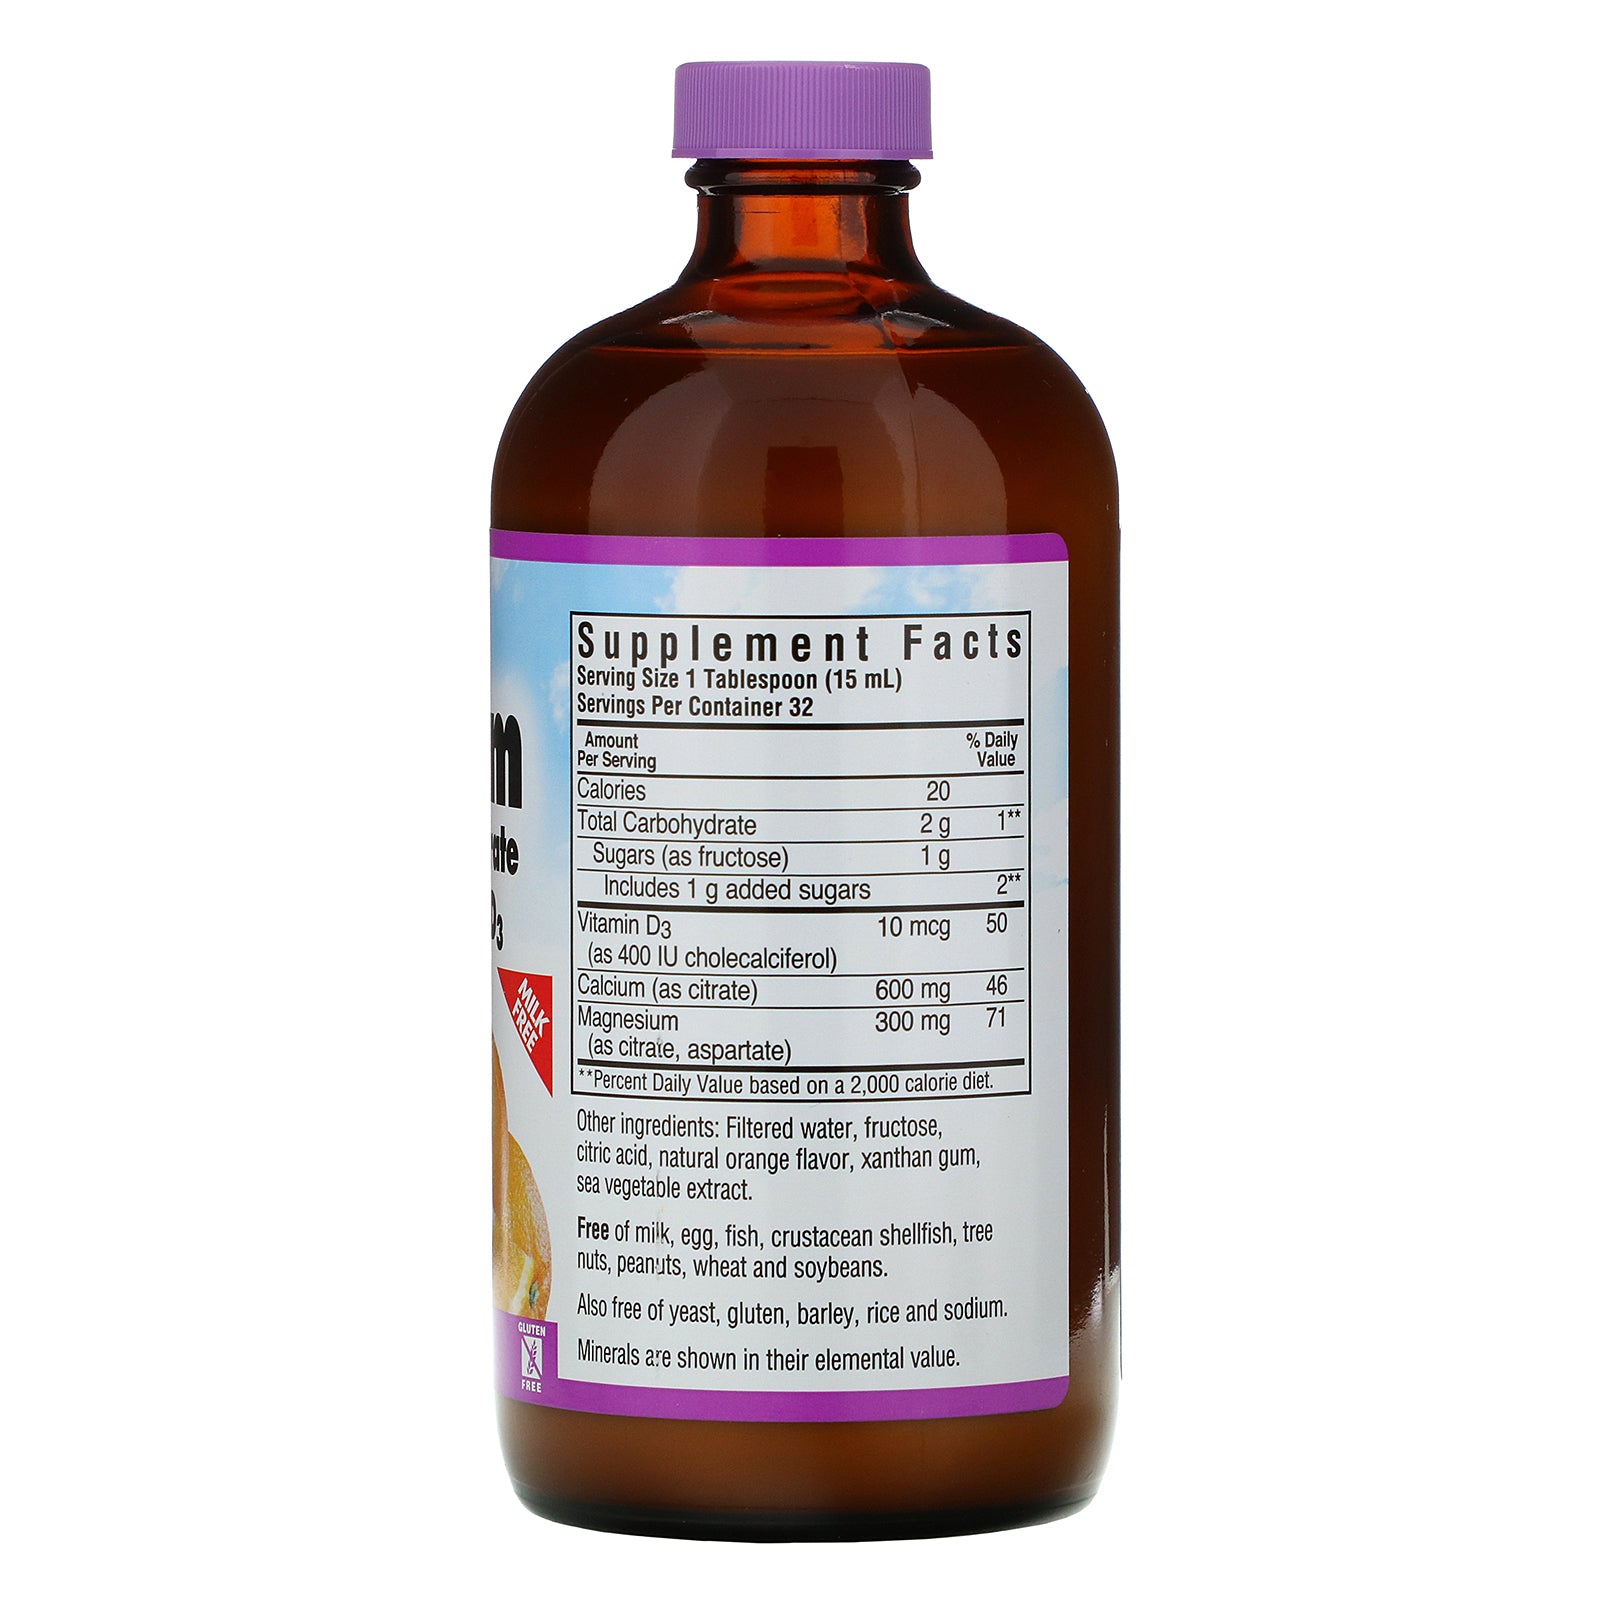 Bluebonnet Nutrition, Liquid Calcium Magnesium Citrate Plus Vitamin D3, Natural Orange Flavor, 16 fl oz (472 ml)